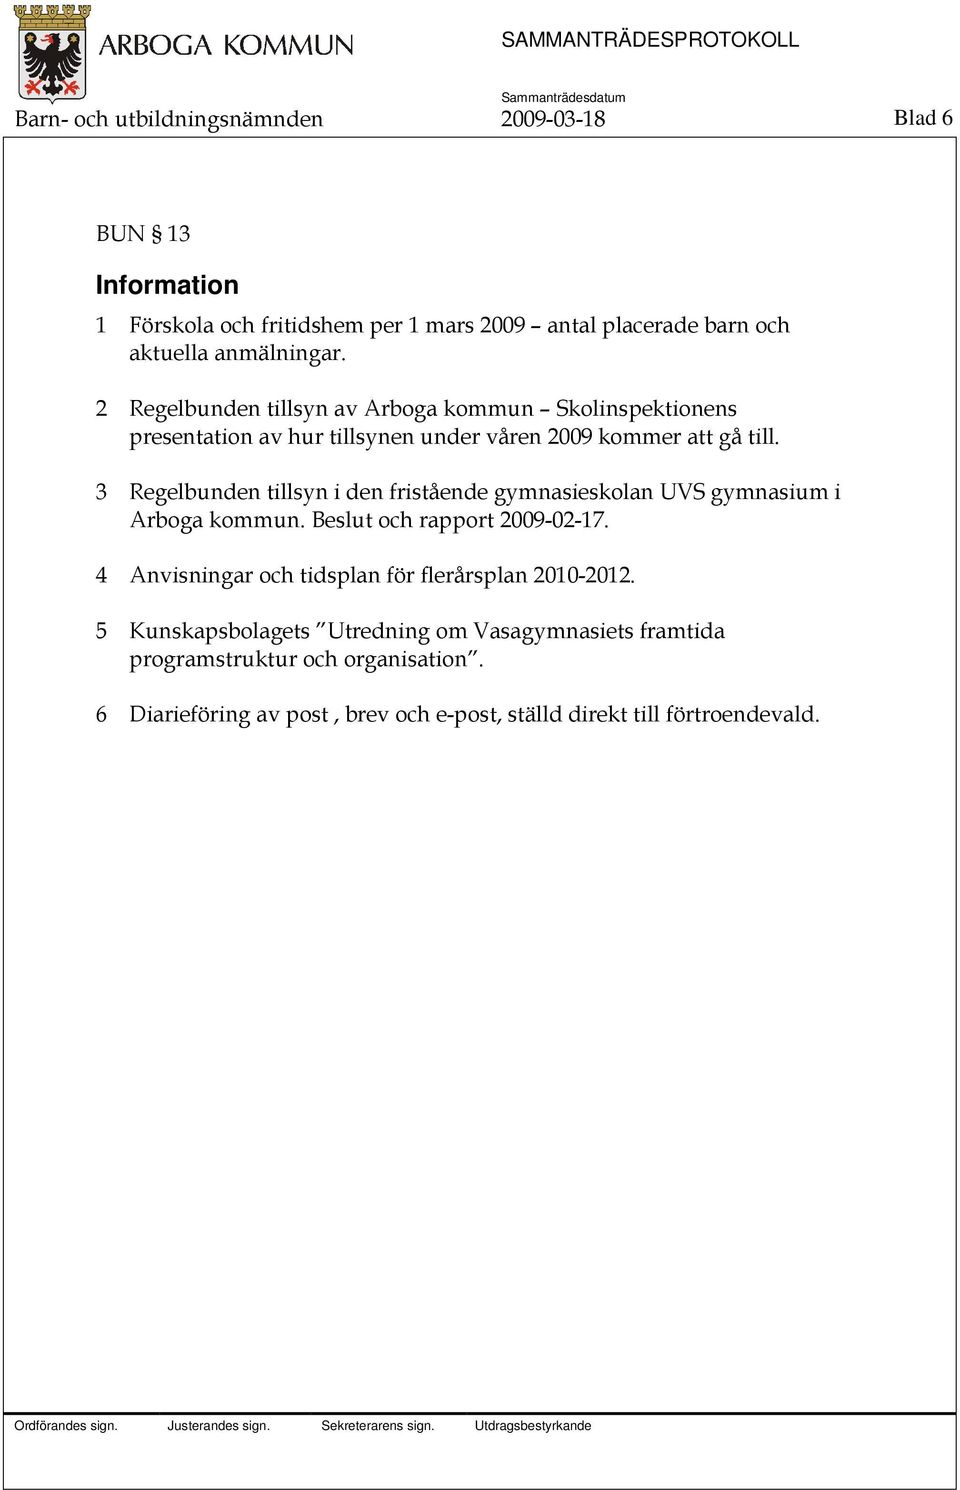 3 Regelbunden tillsyn i den fristående gymnasieskolan UVS gymnasium i Arboga kommun. Beslut och rapport 2009-02-17.